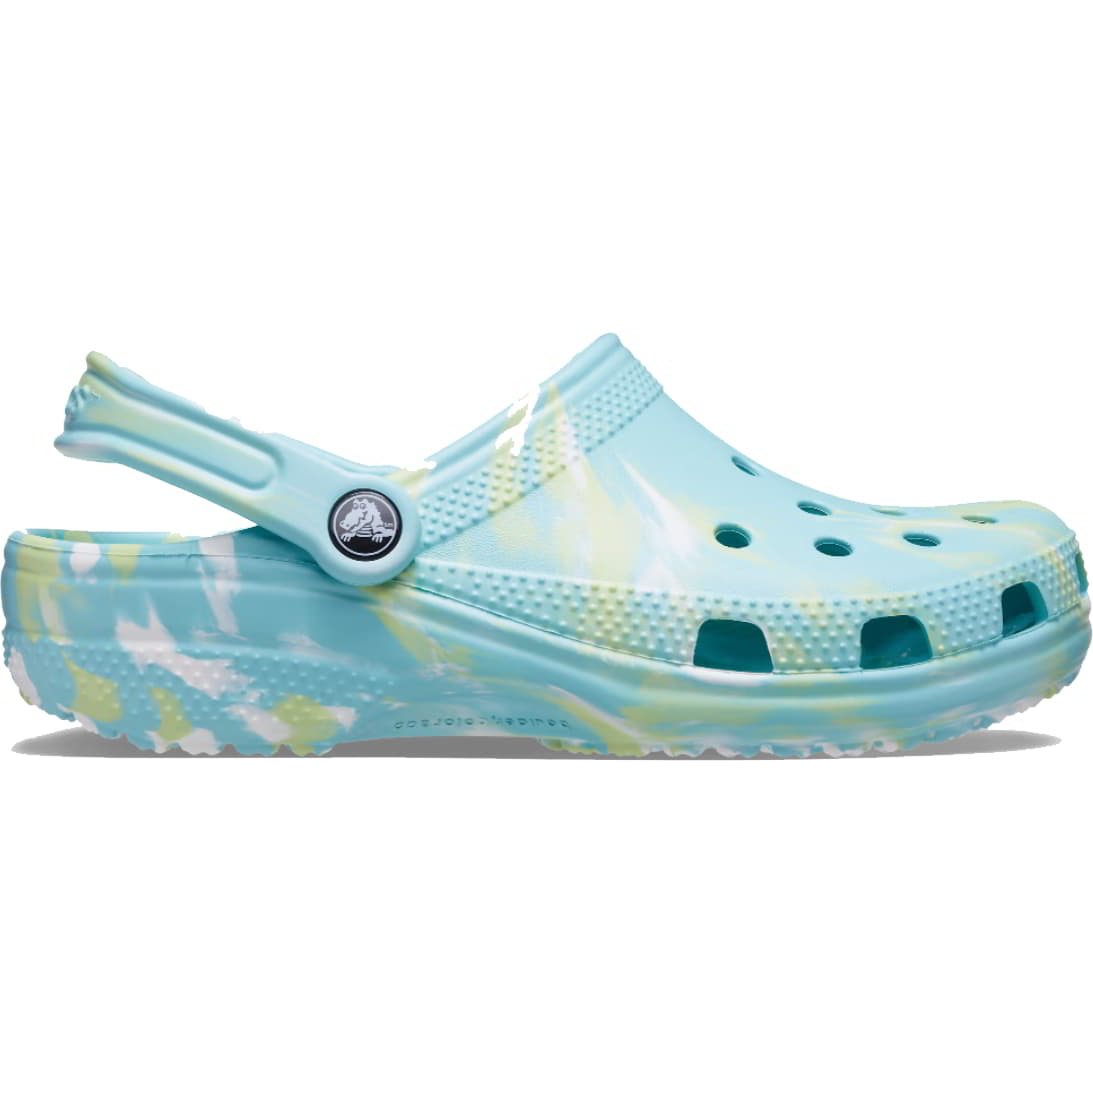 crocs womens classic clog marble slip on vegan shoes sandals - uk 6 / eu 38-39 / w8